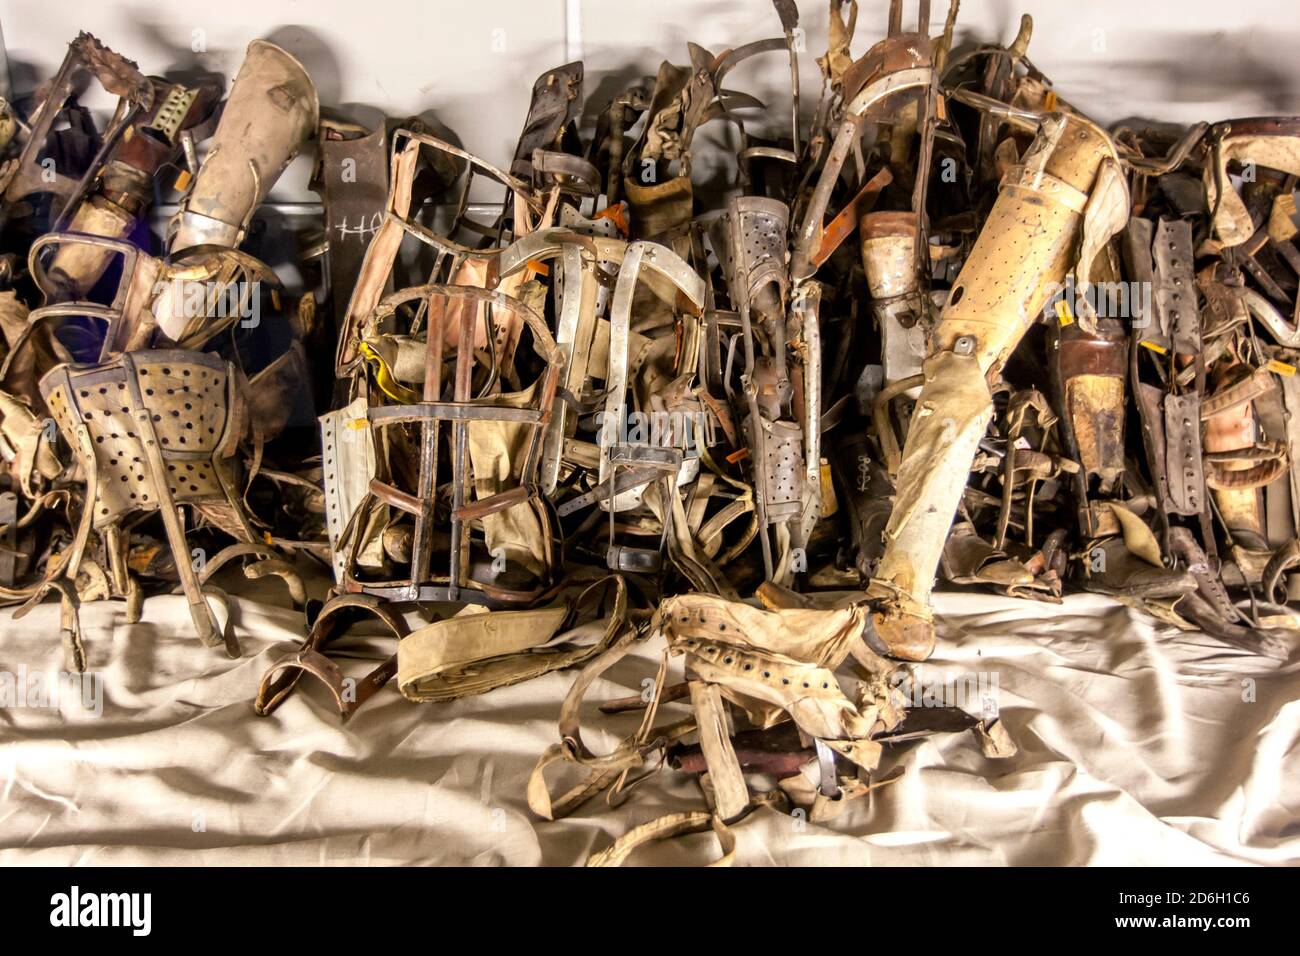 Une collection de prothèses retirées des prisonniers au musée d'État d'Auschwitz-Birkenau à Oswiecim en Pologne. Banque D'Images